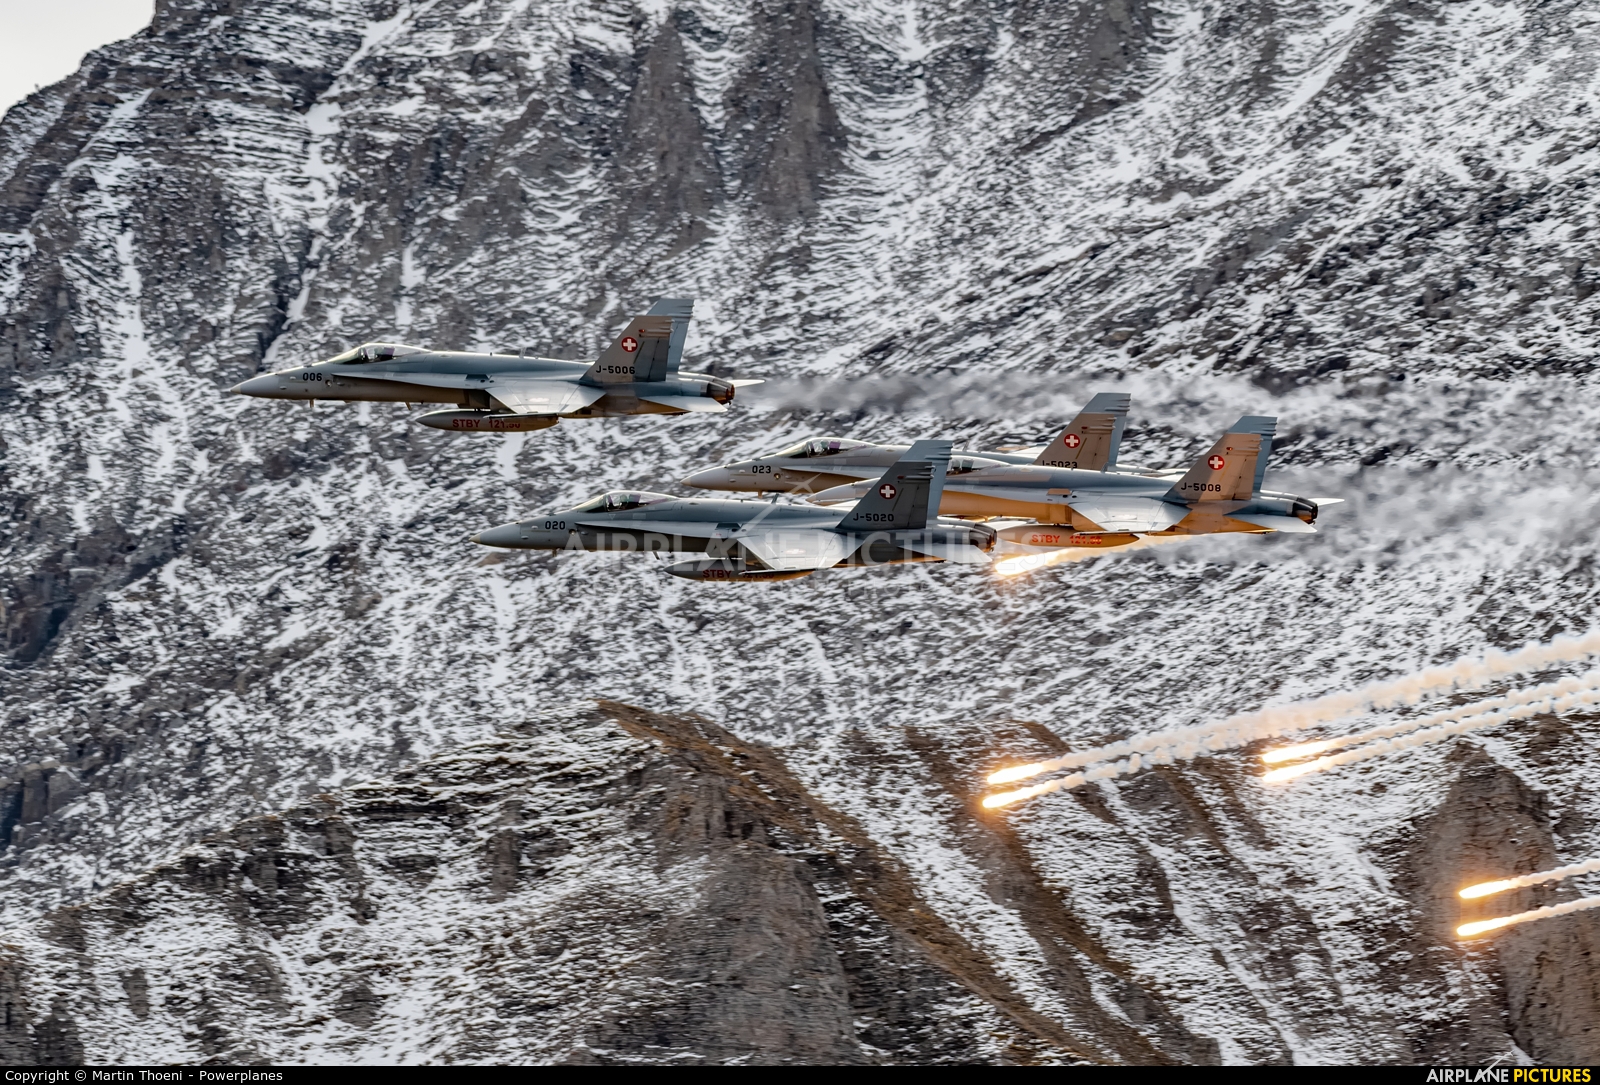 Switzerland - Air Force J-5020 aircraft at Axalp - Ebenfluh Range